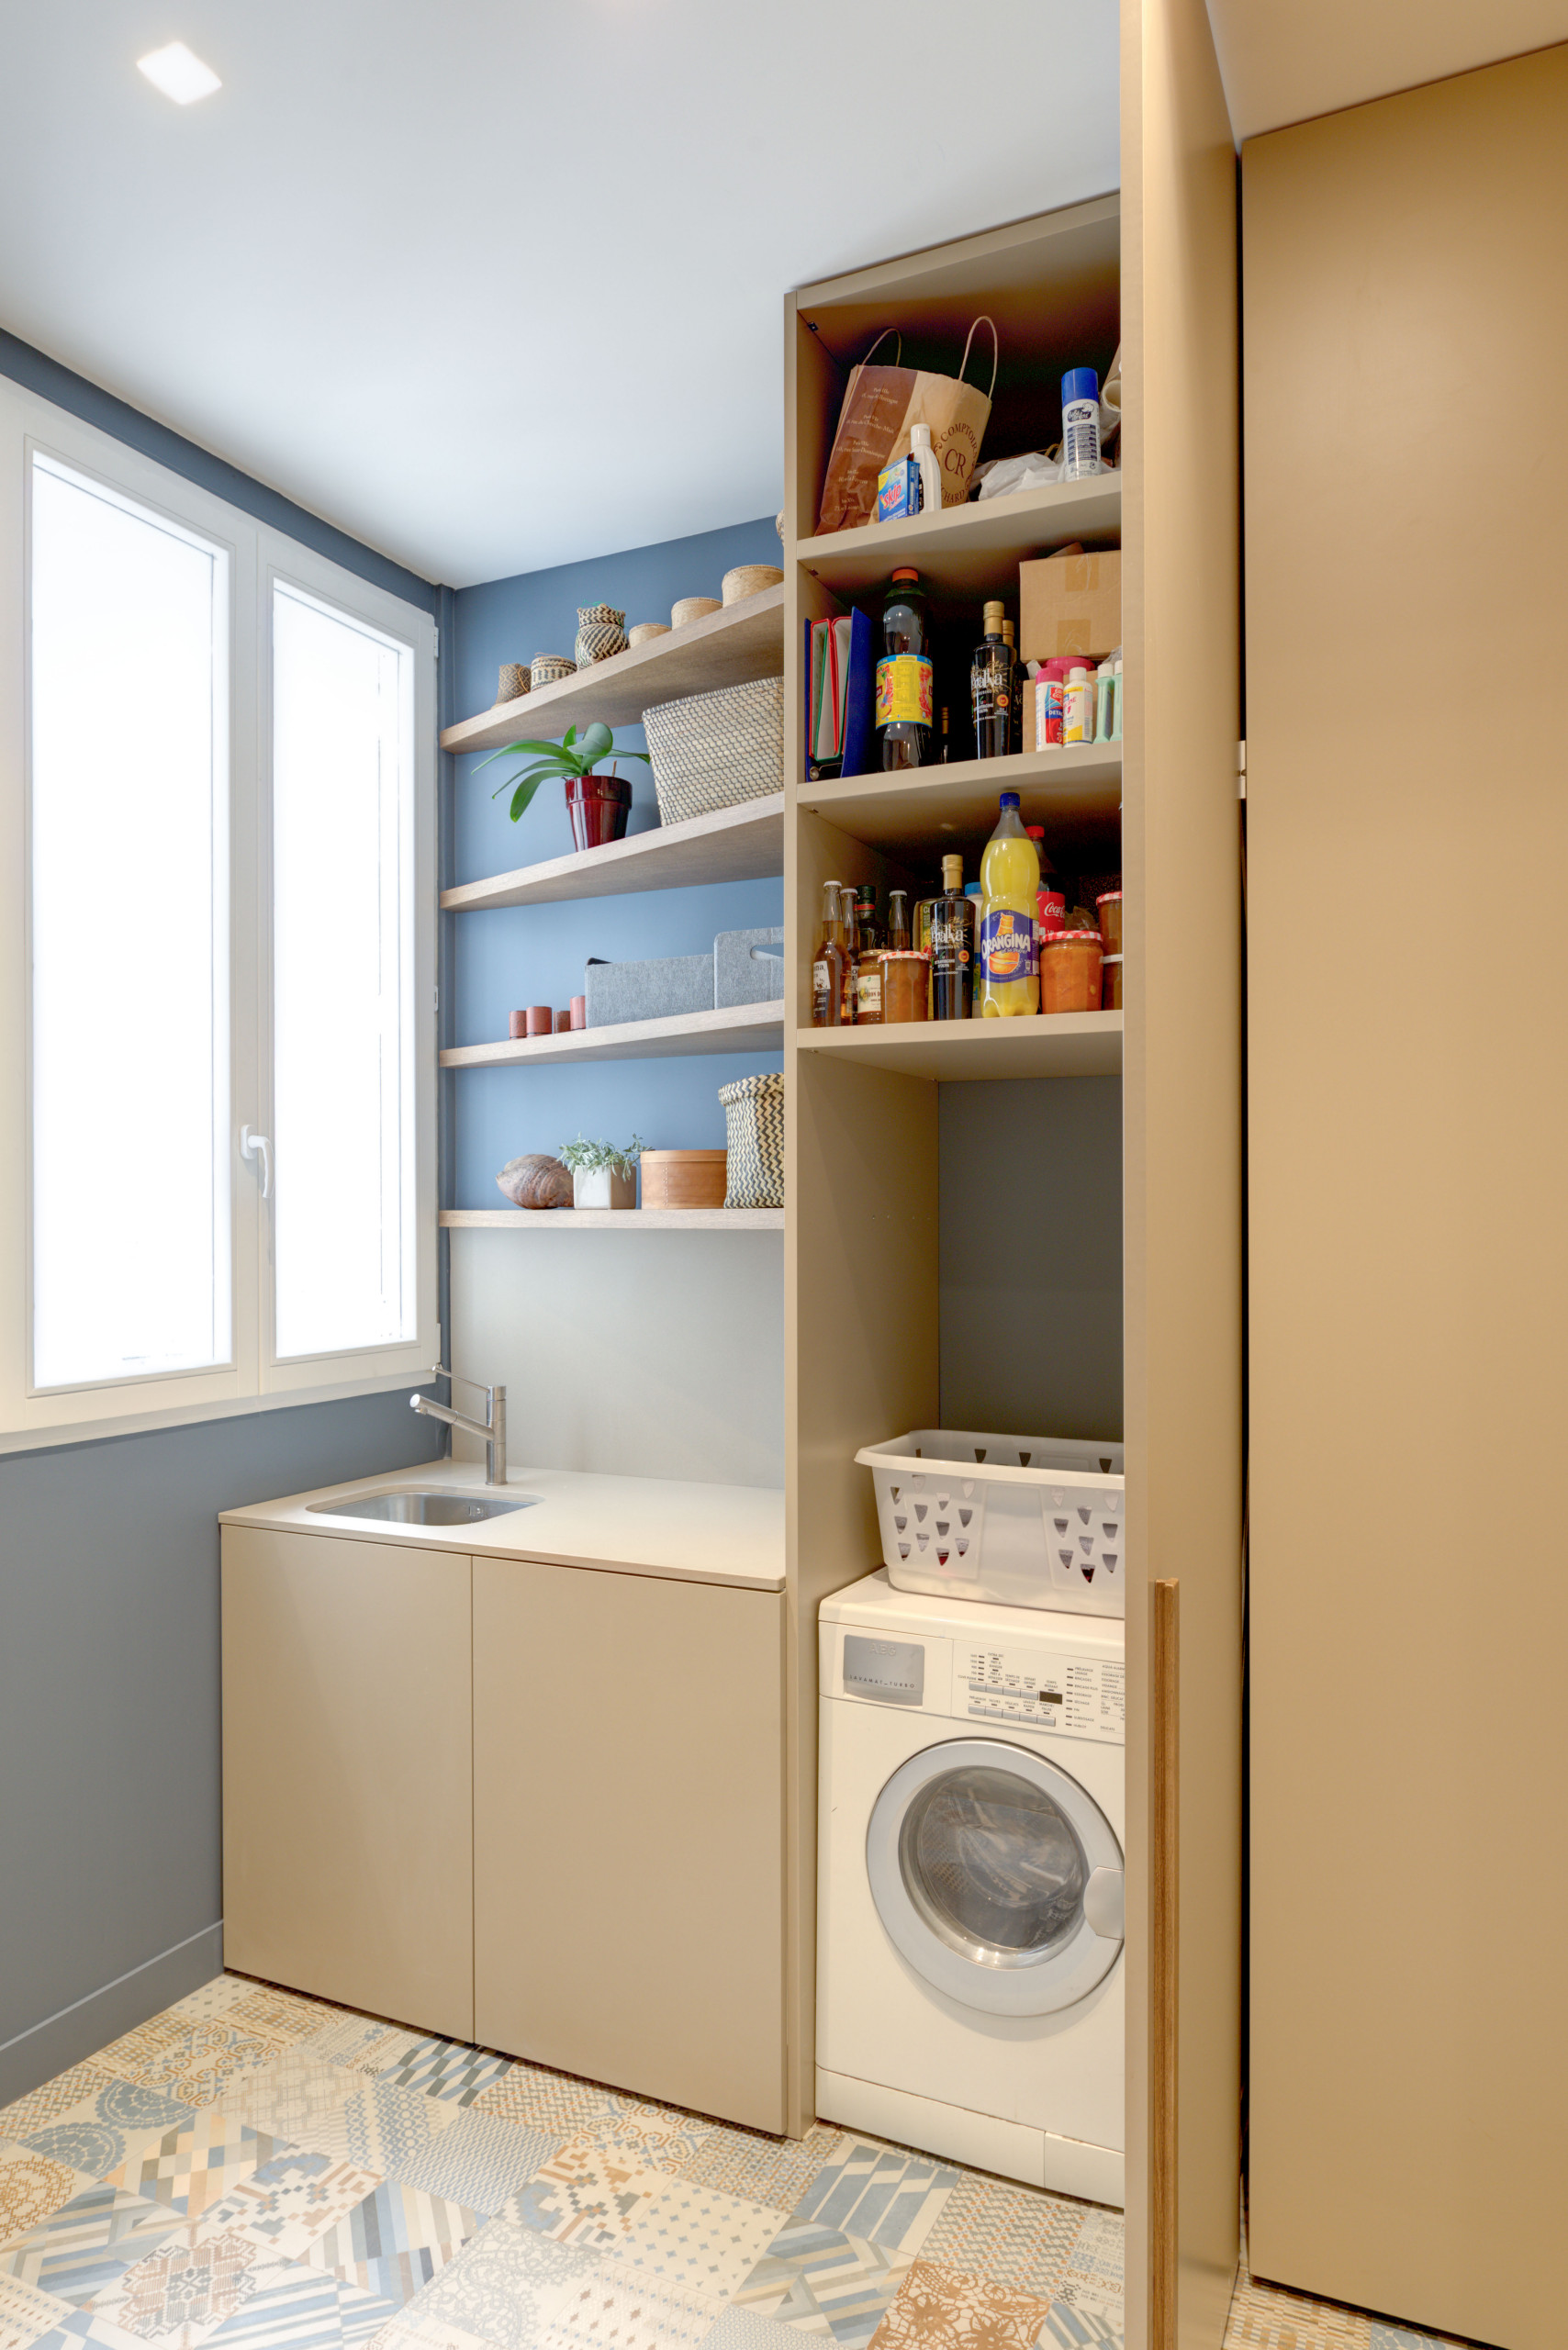 Kein Hauswirtschaftsraum? 9 Ideen zu cleveren Einbauwaschküchen